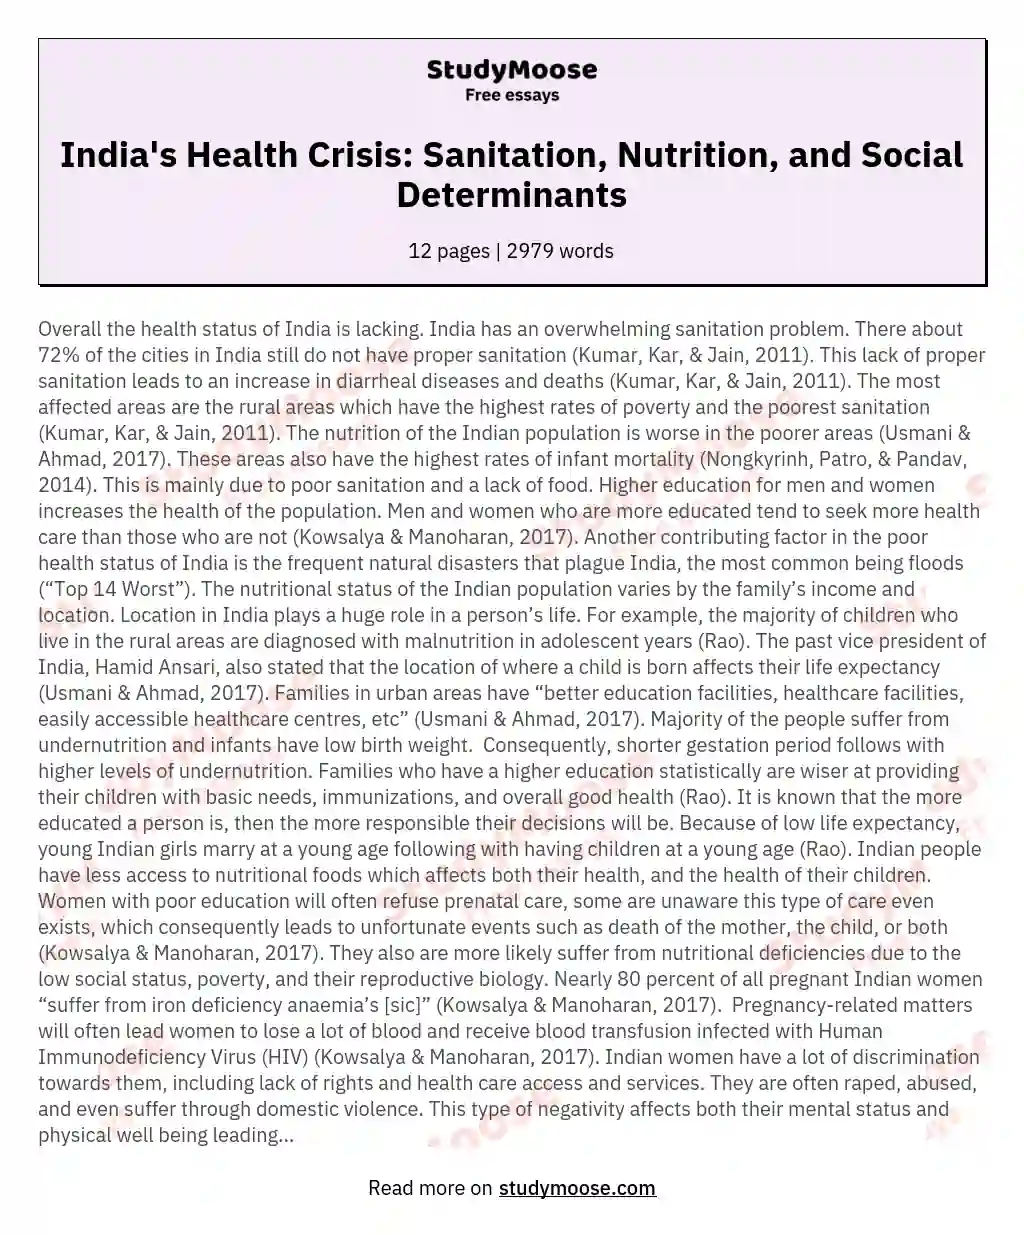 Health Status of India